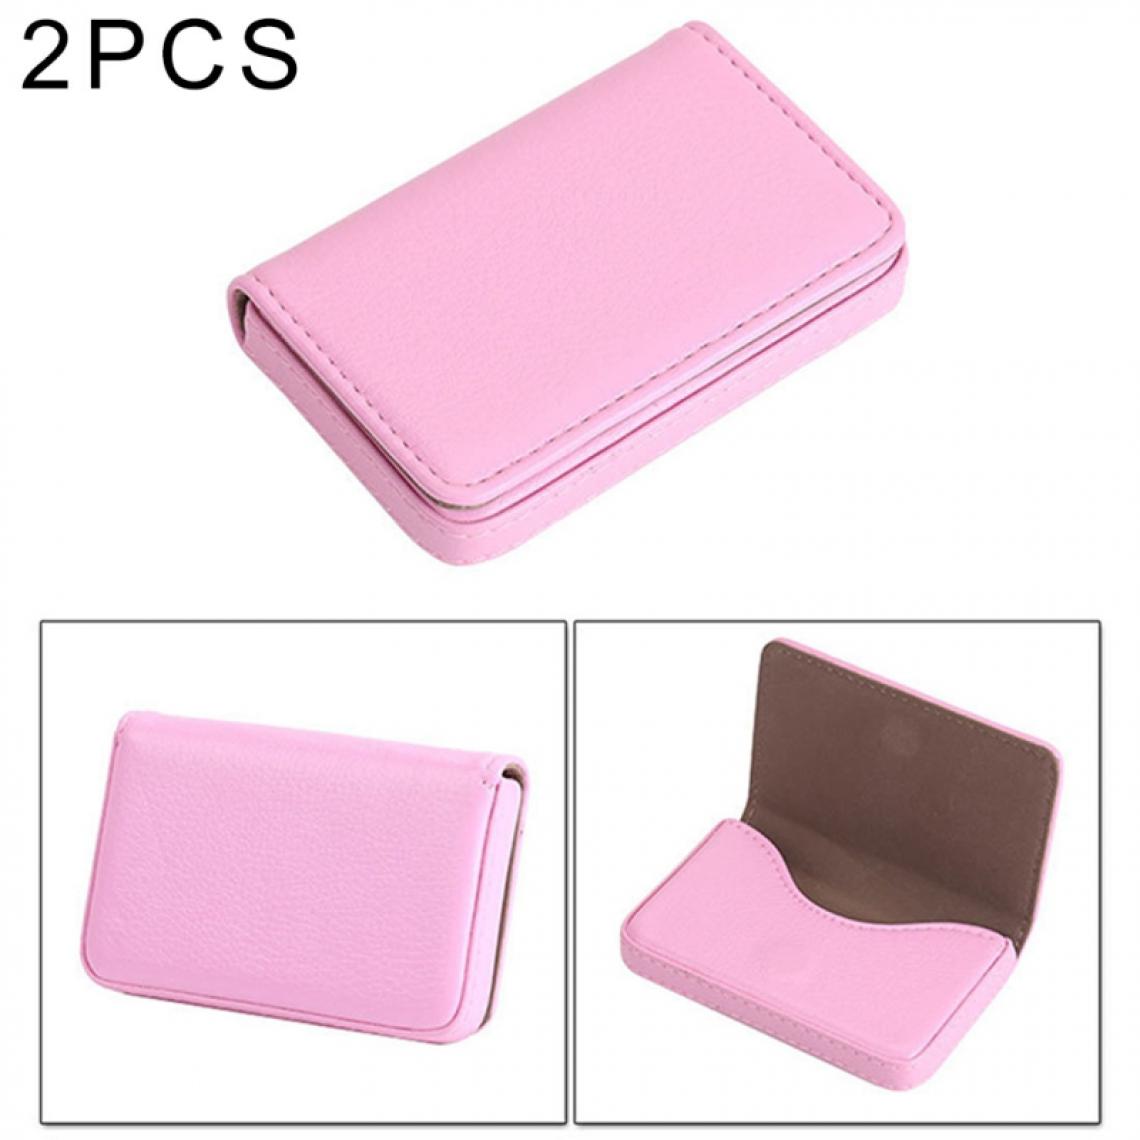 Wewoo - Porte-cartes rose 2 PCS Premium PU étui en cuir avec fermeture magnétique, taille: 10 * 6.5 * 1.7cm - Accessoires Bureau